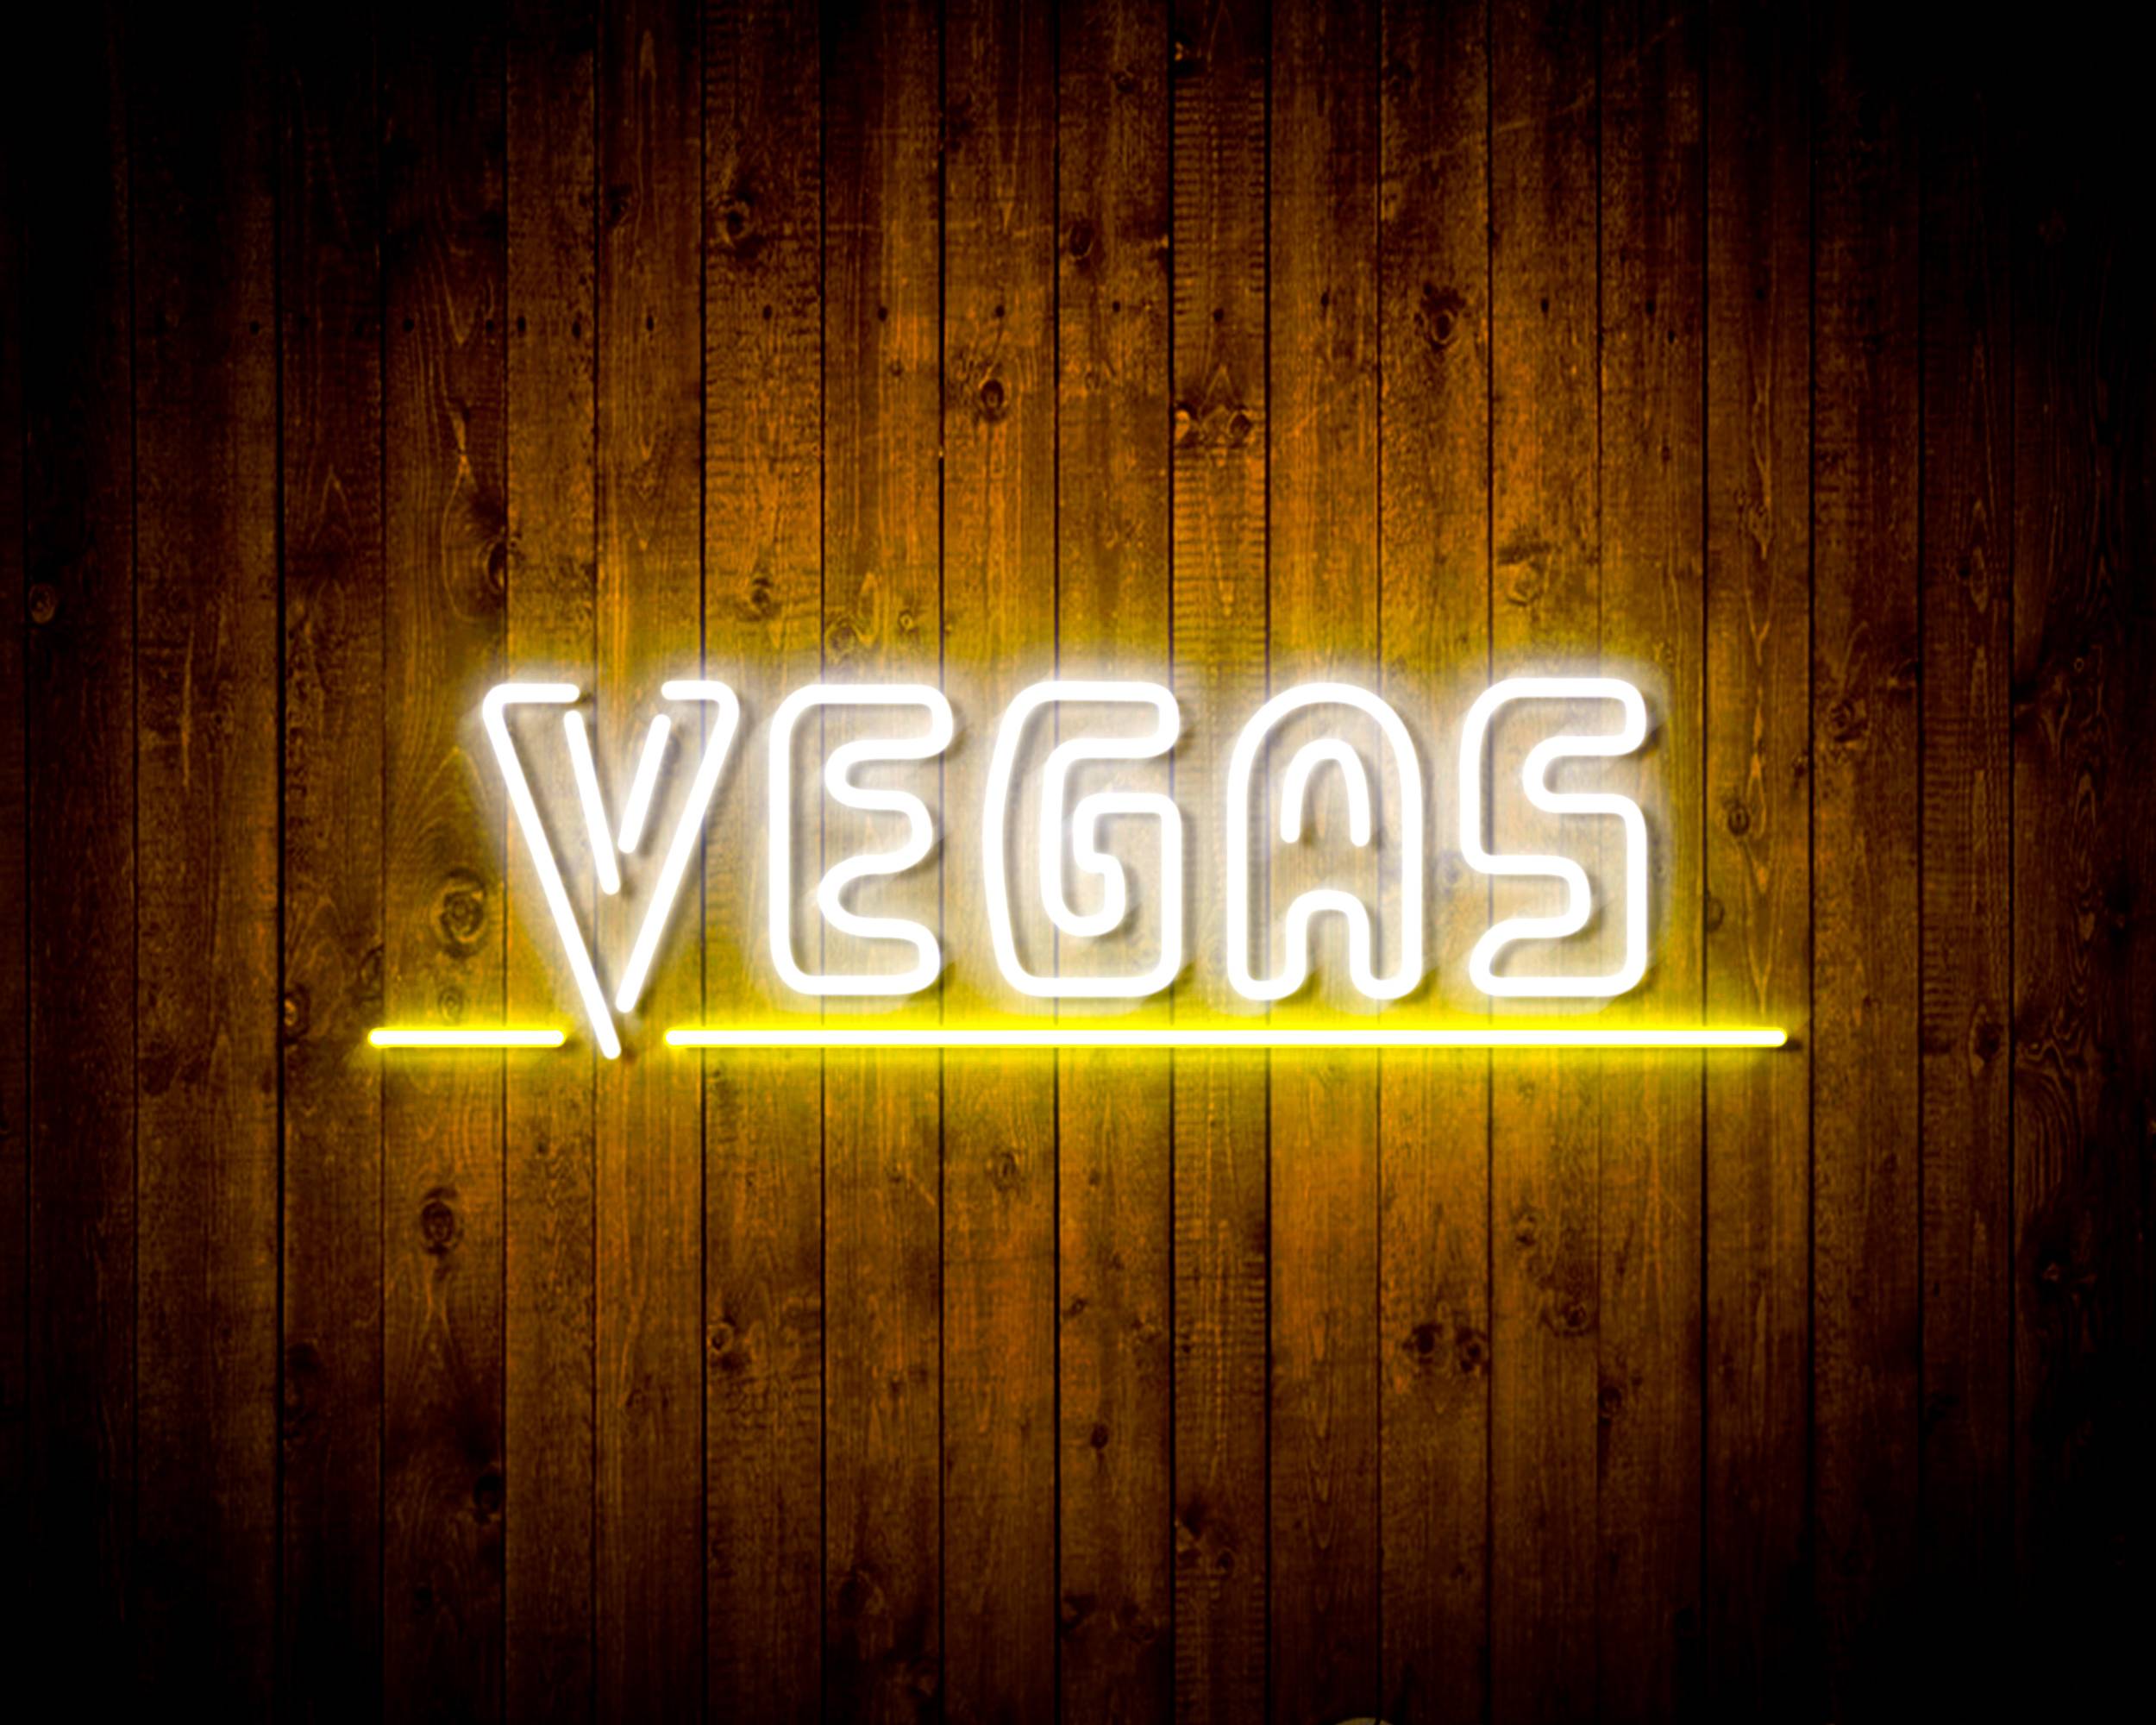 NHL Vegas Golden Knights Handmade LED Neon Light Sign